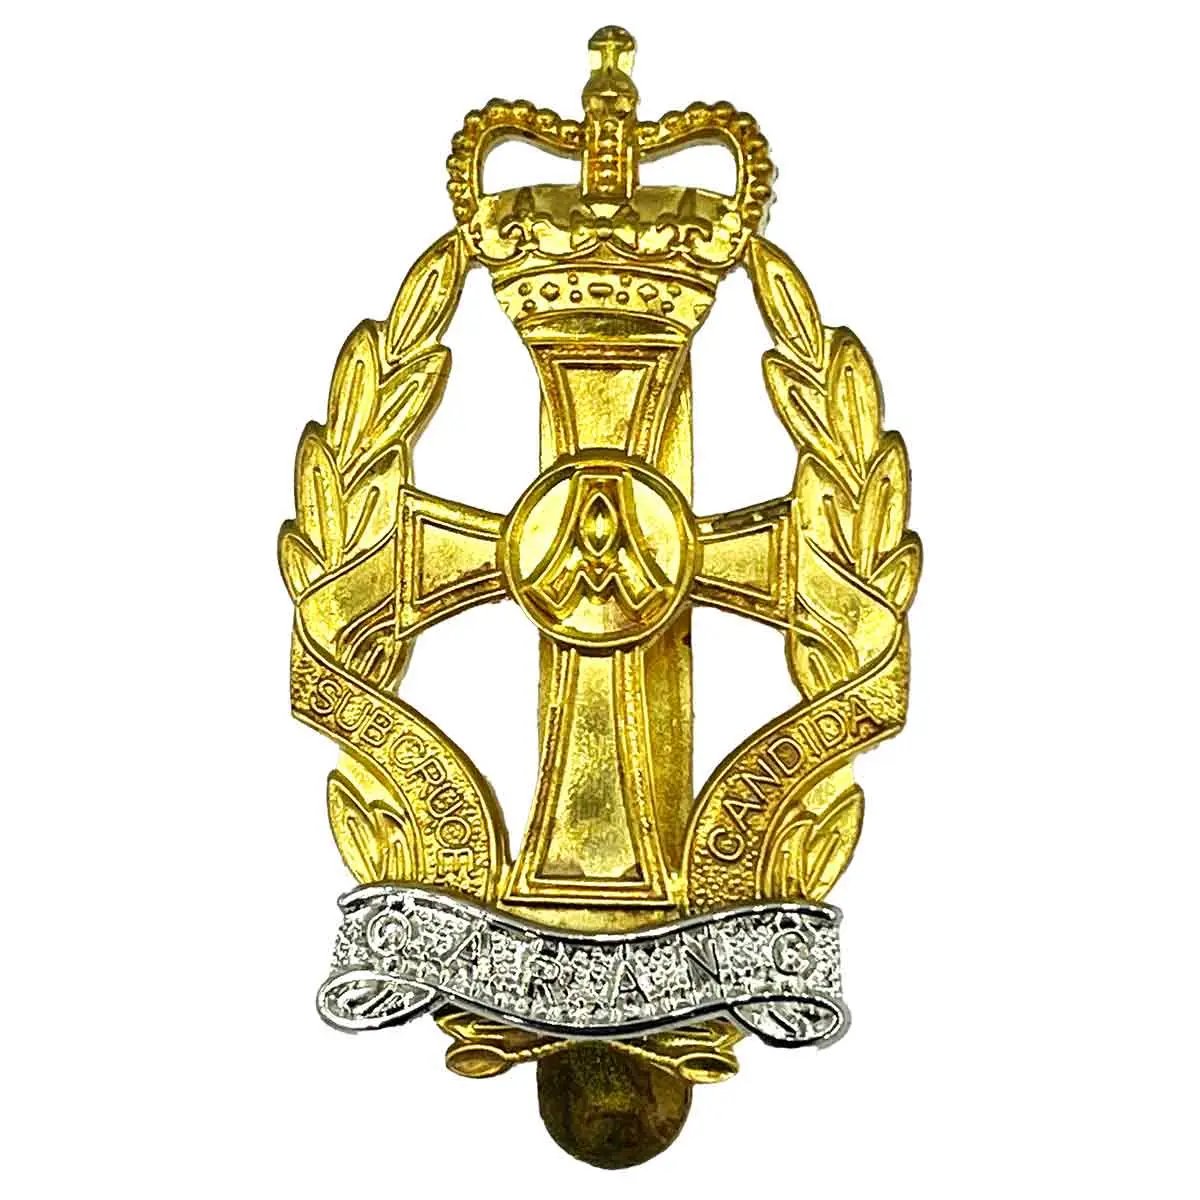 Qaranc Beret Cap Badge - John Bull Clothing